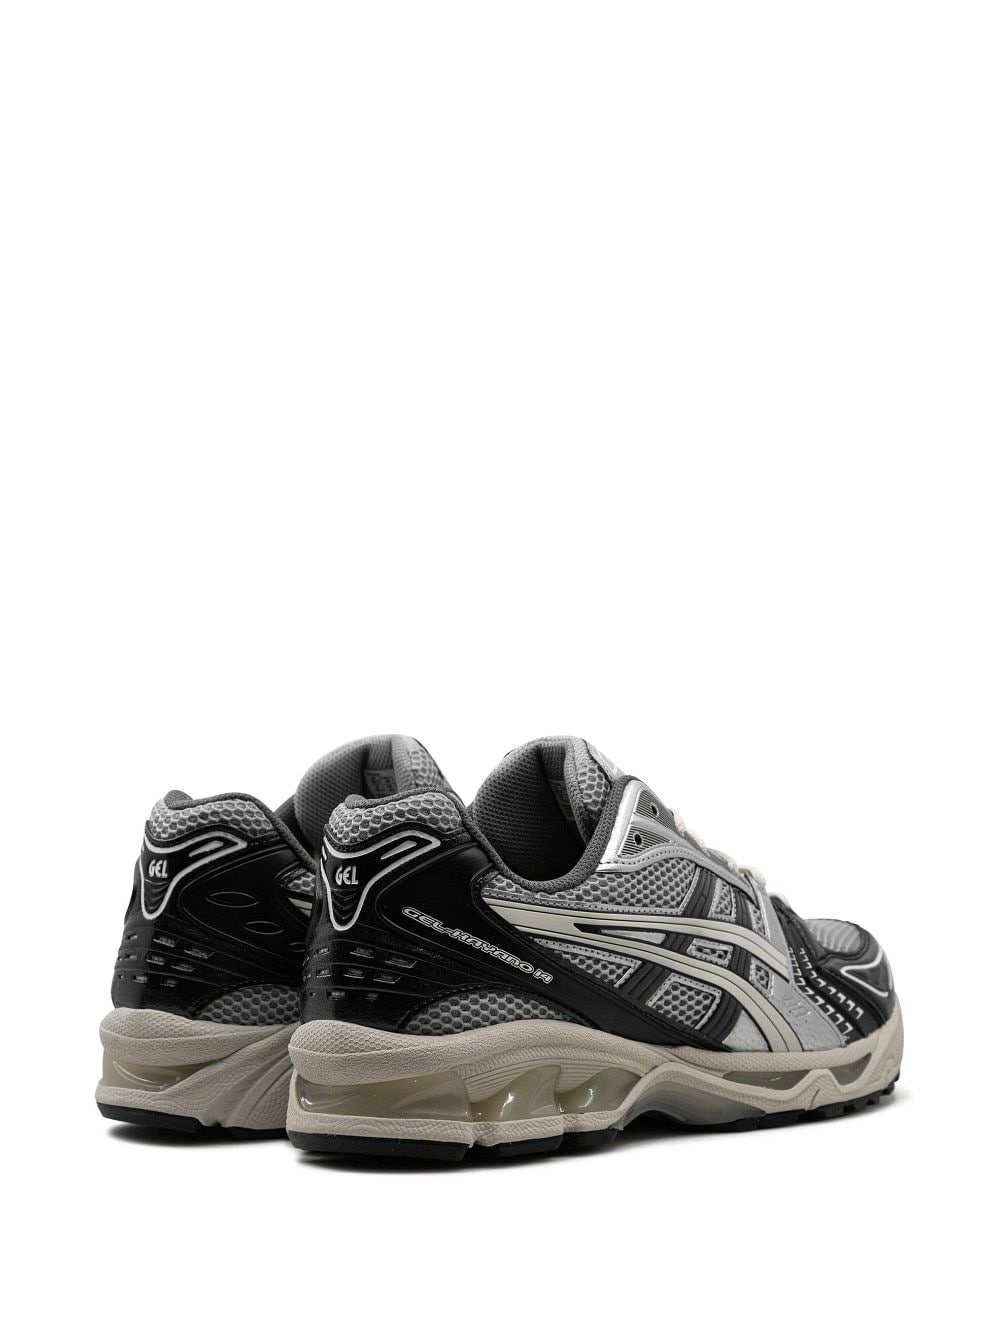 GEL-KAYANO 14 "Black/Glacier Grey Silver" sneakers - 3